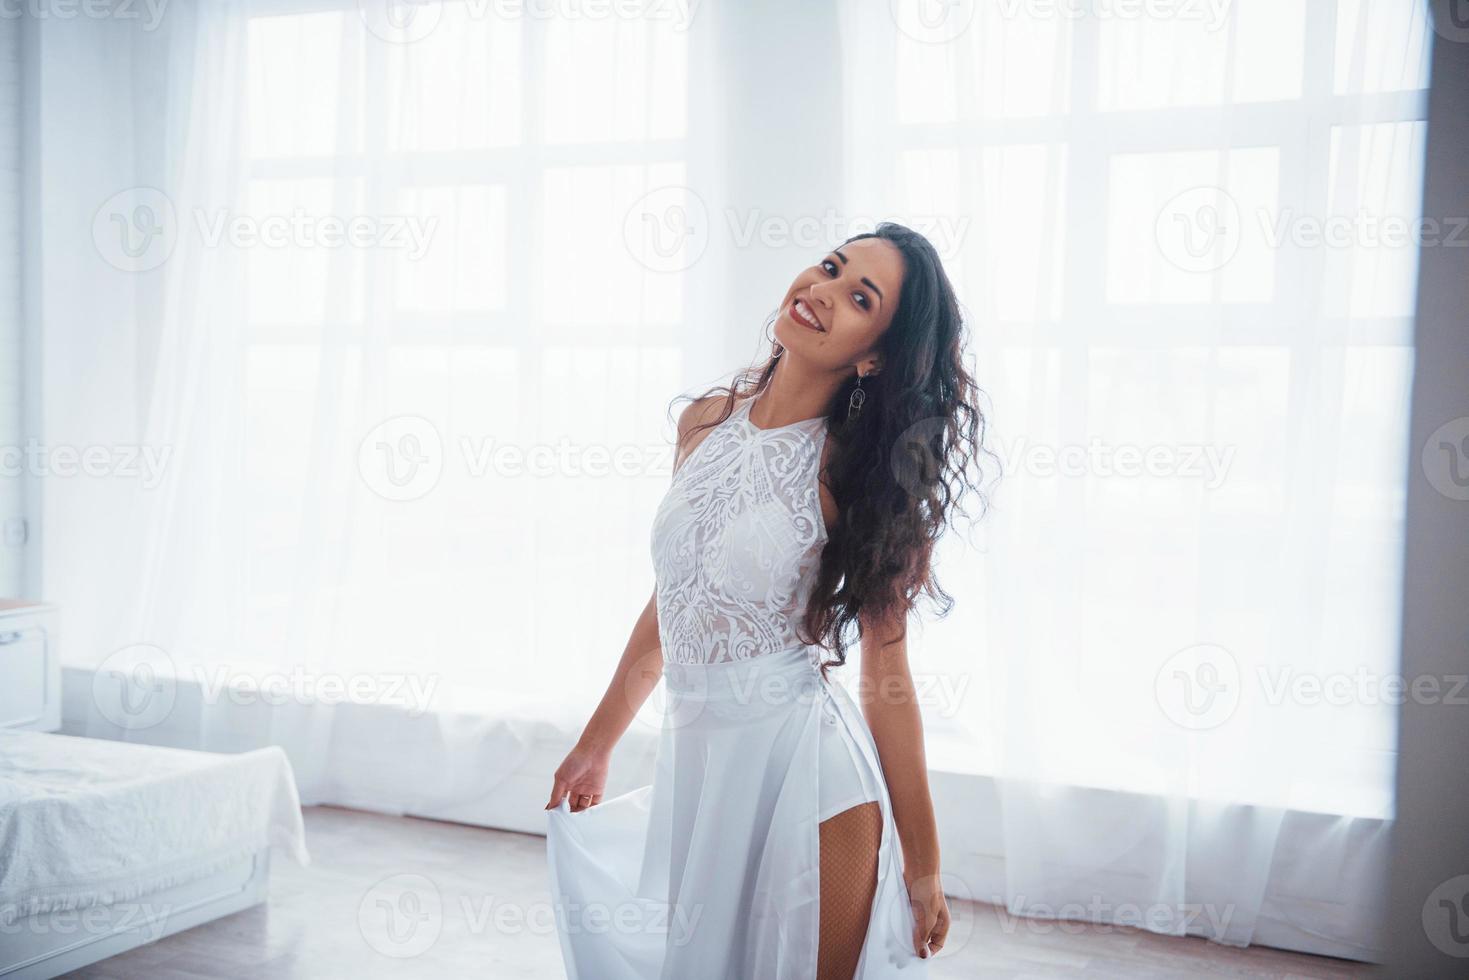 satisfecho y libre. Bella mujer vestida de blanco se encuentra en una habitación blanca con luz natural a través de las ventanas foto